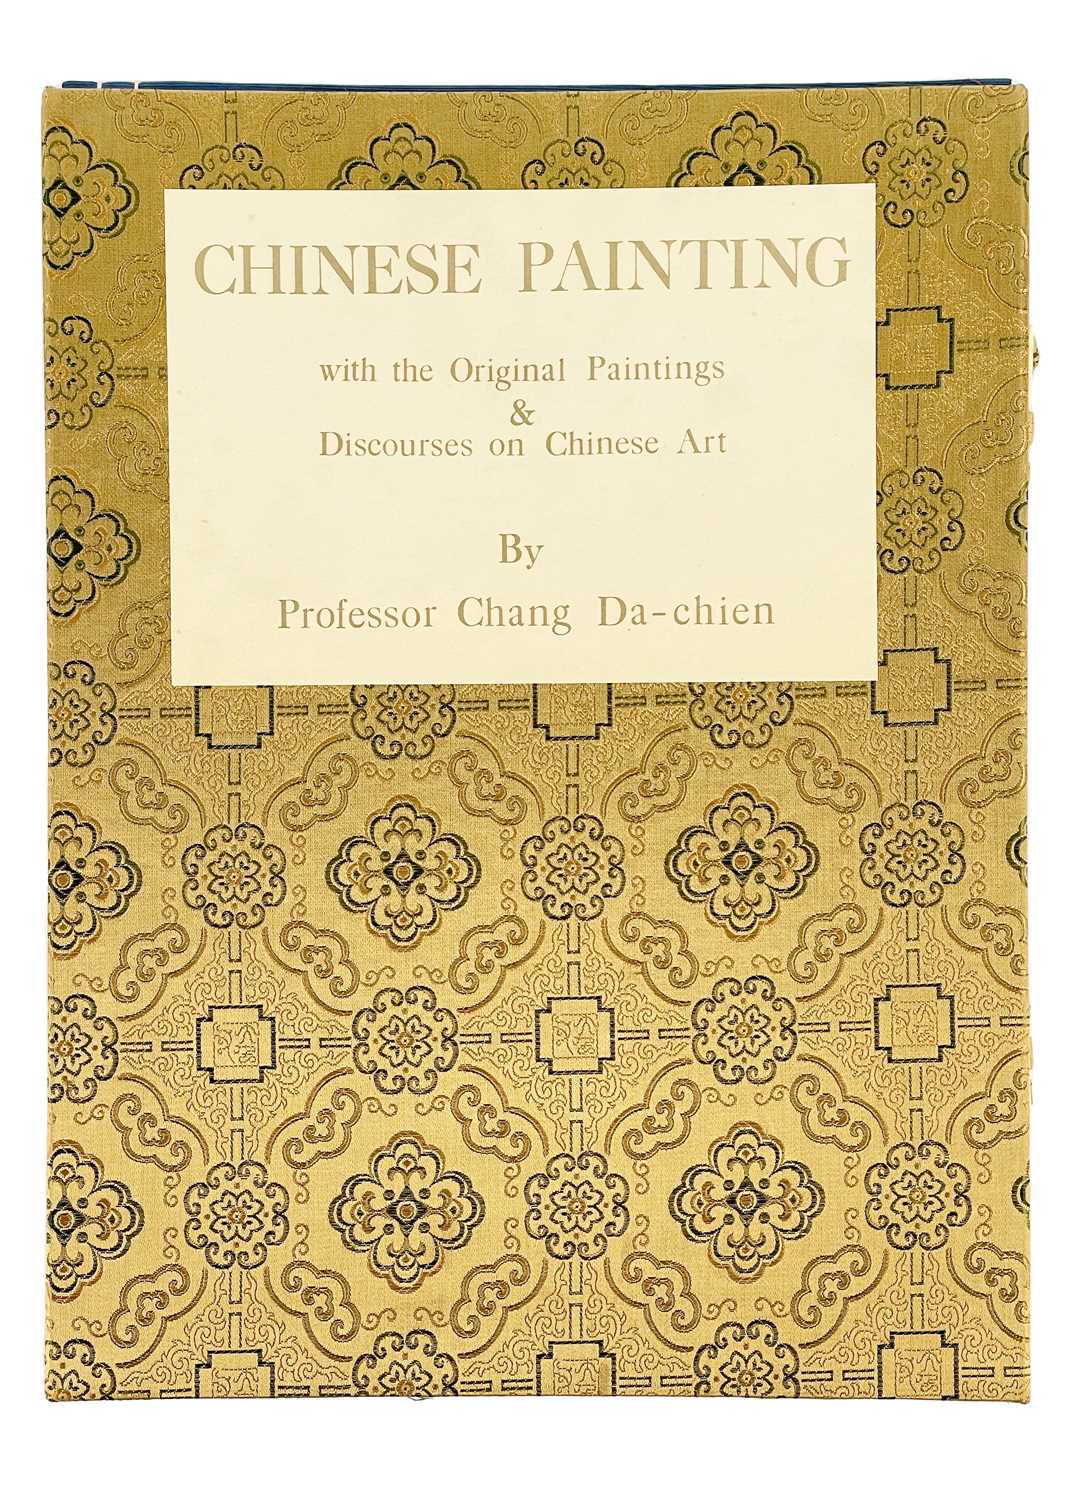 Da-Chien (Professor Chang), 'Chinese Painting' Yee Tin Tong Printing Press Ltd, Hong Kong, 1961., - Image 2 of 11